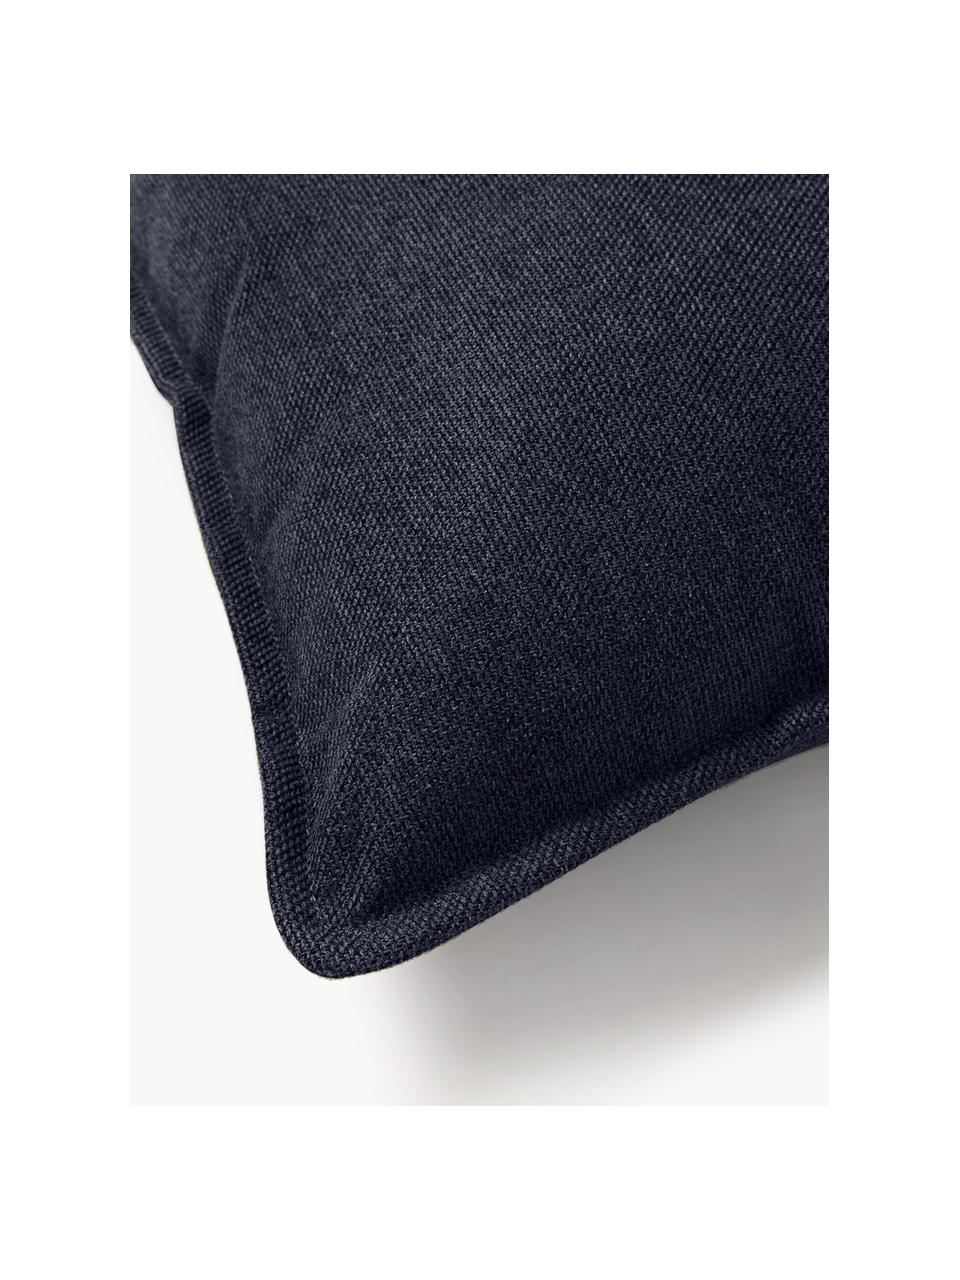 Cuscino decorativo Lennon, Rivestimento: 100% poliestere, Tessuto blu scuro, Larg. 70 x Lung. 70 cm